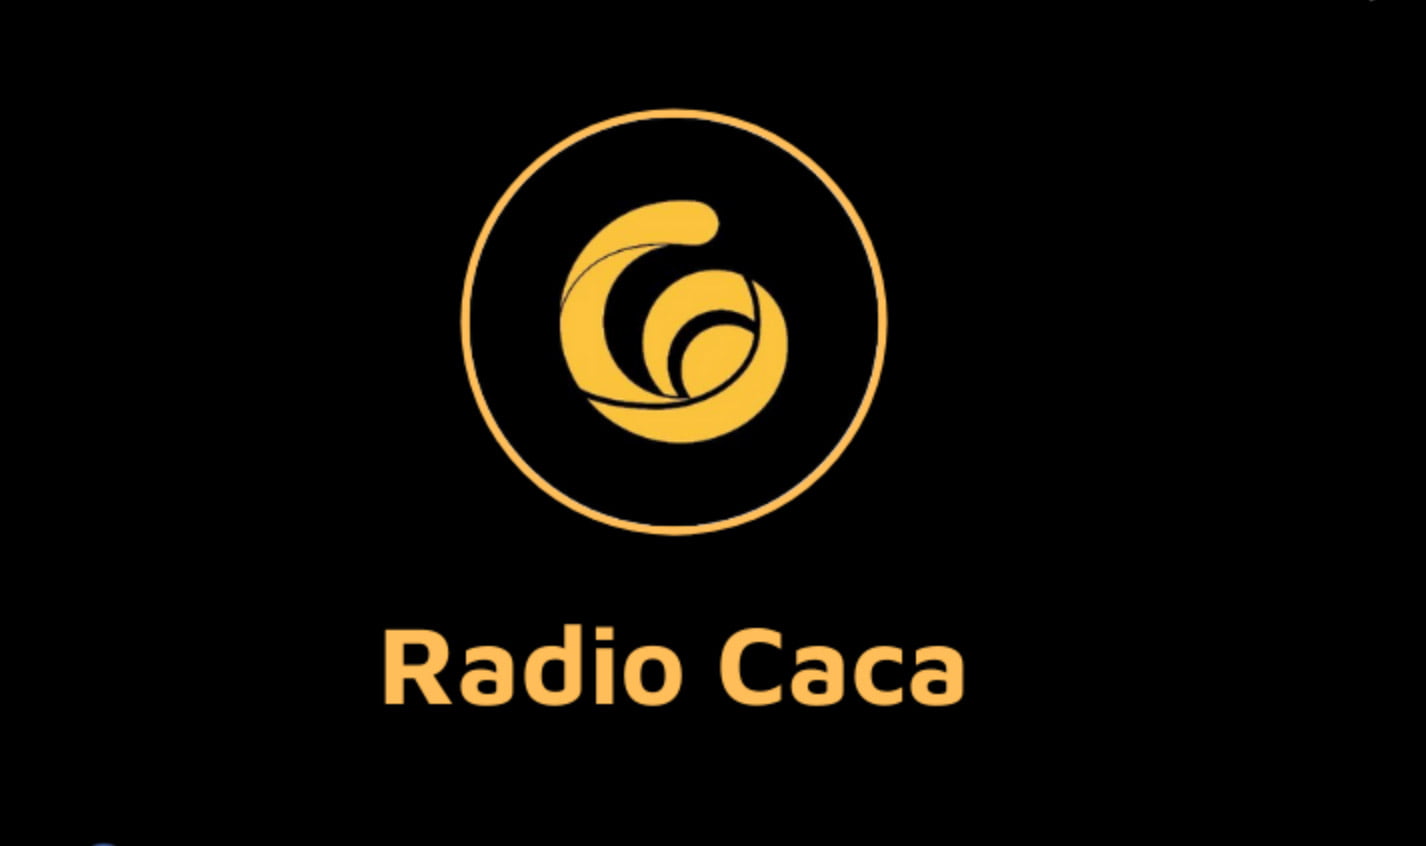 RadioCaca là gì